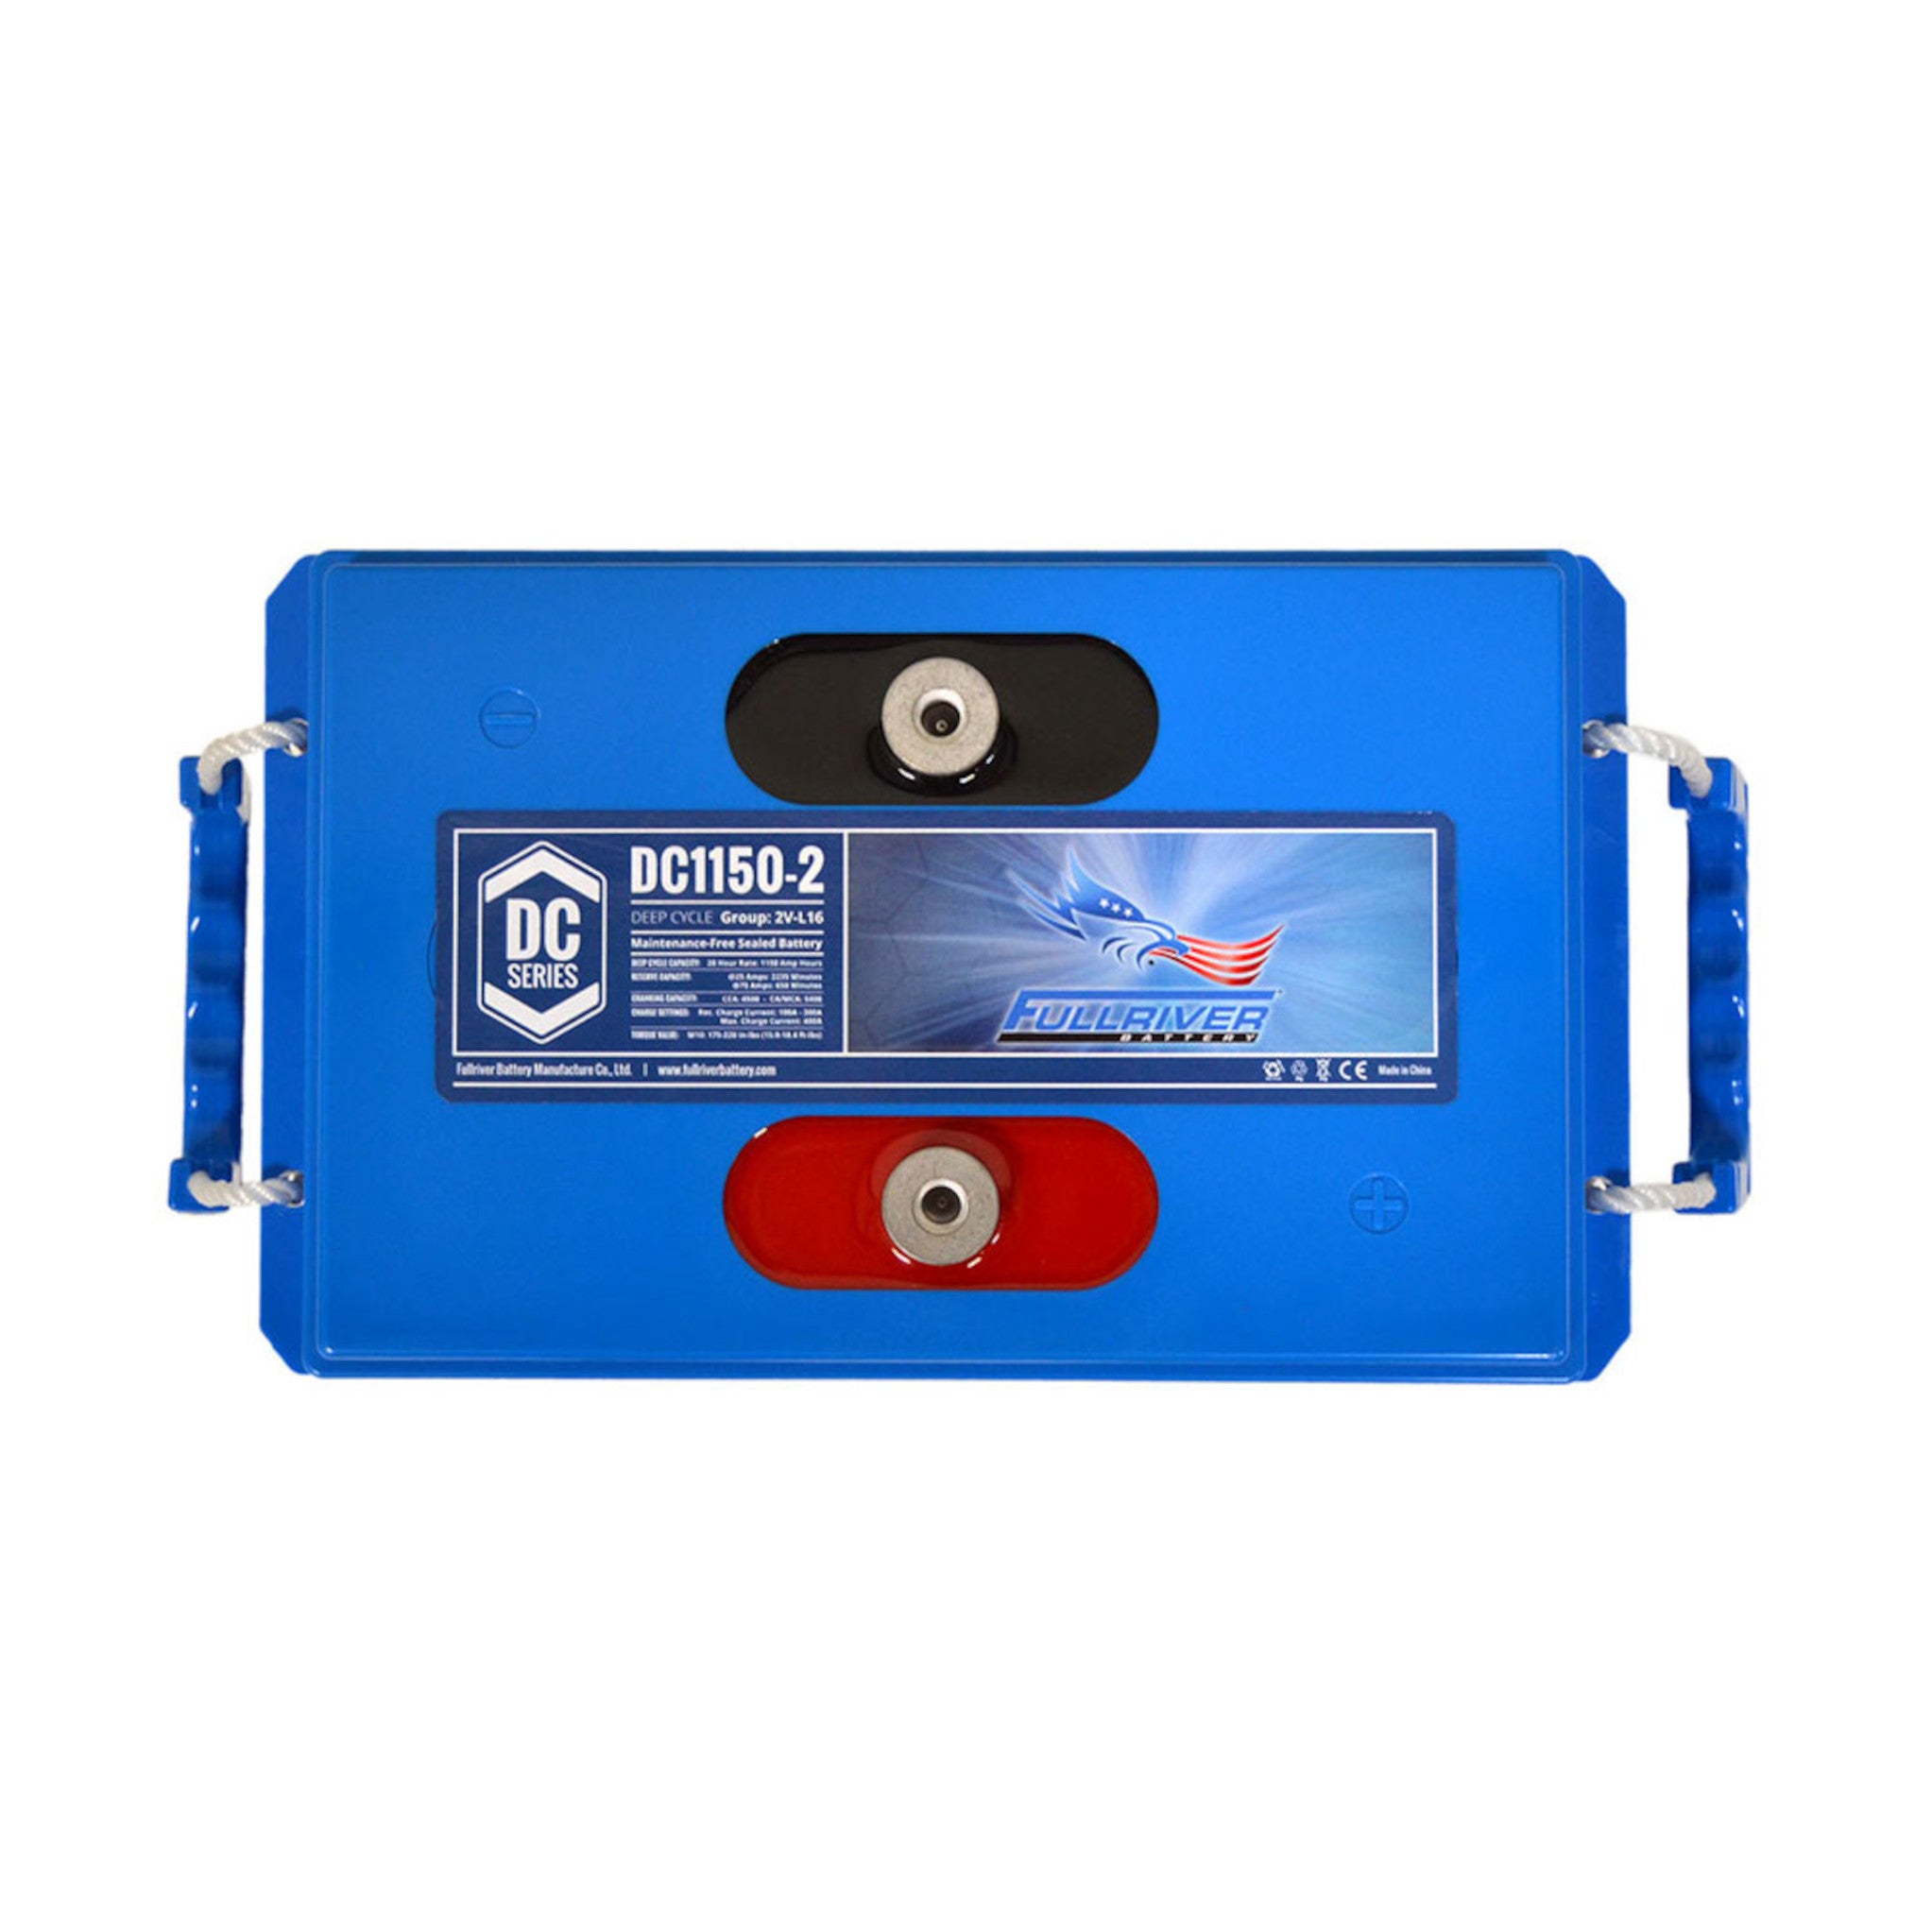 Fullriver DC1150-2 AGM Battery